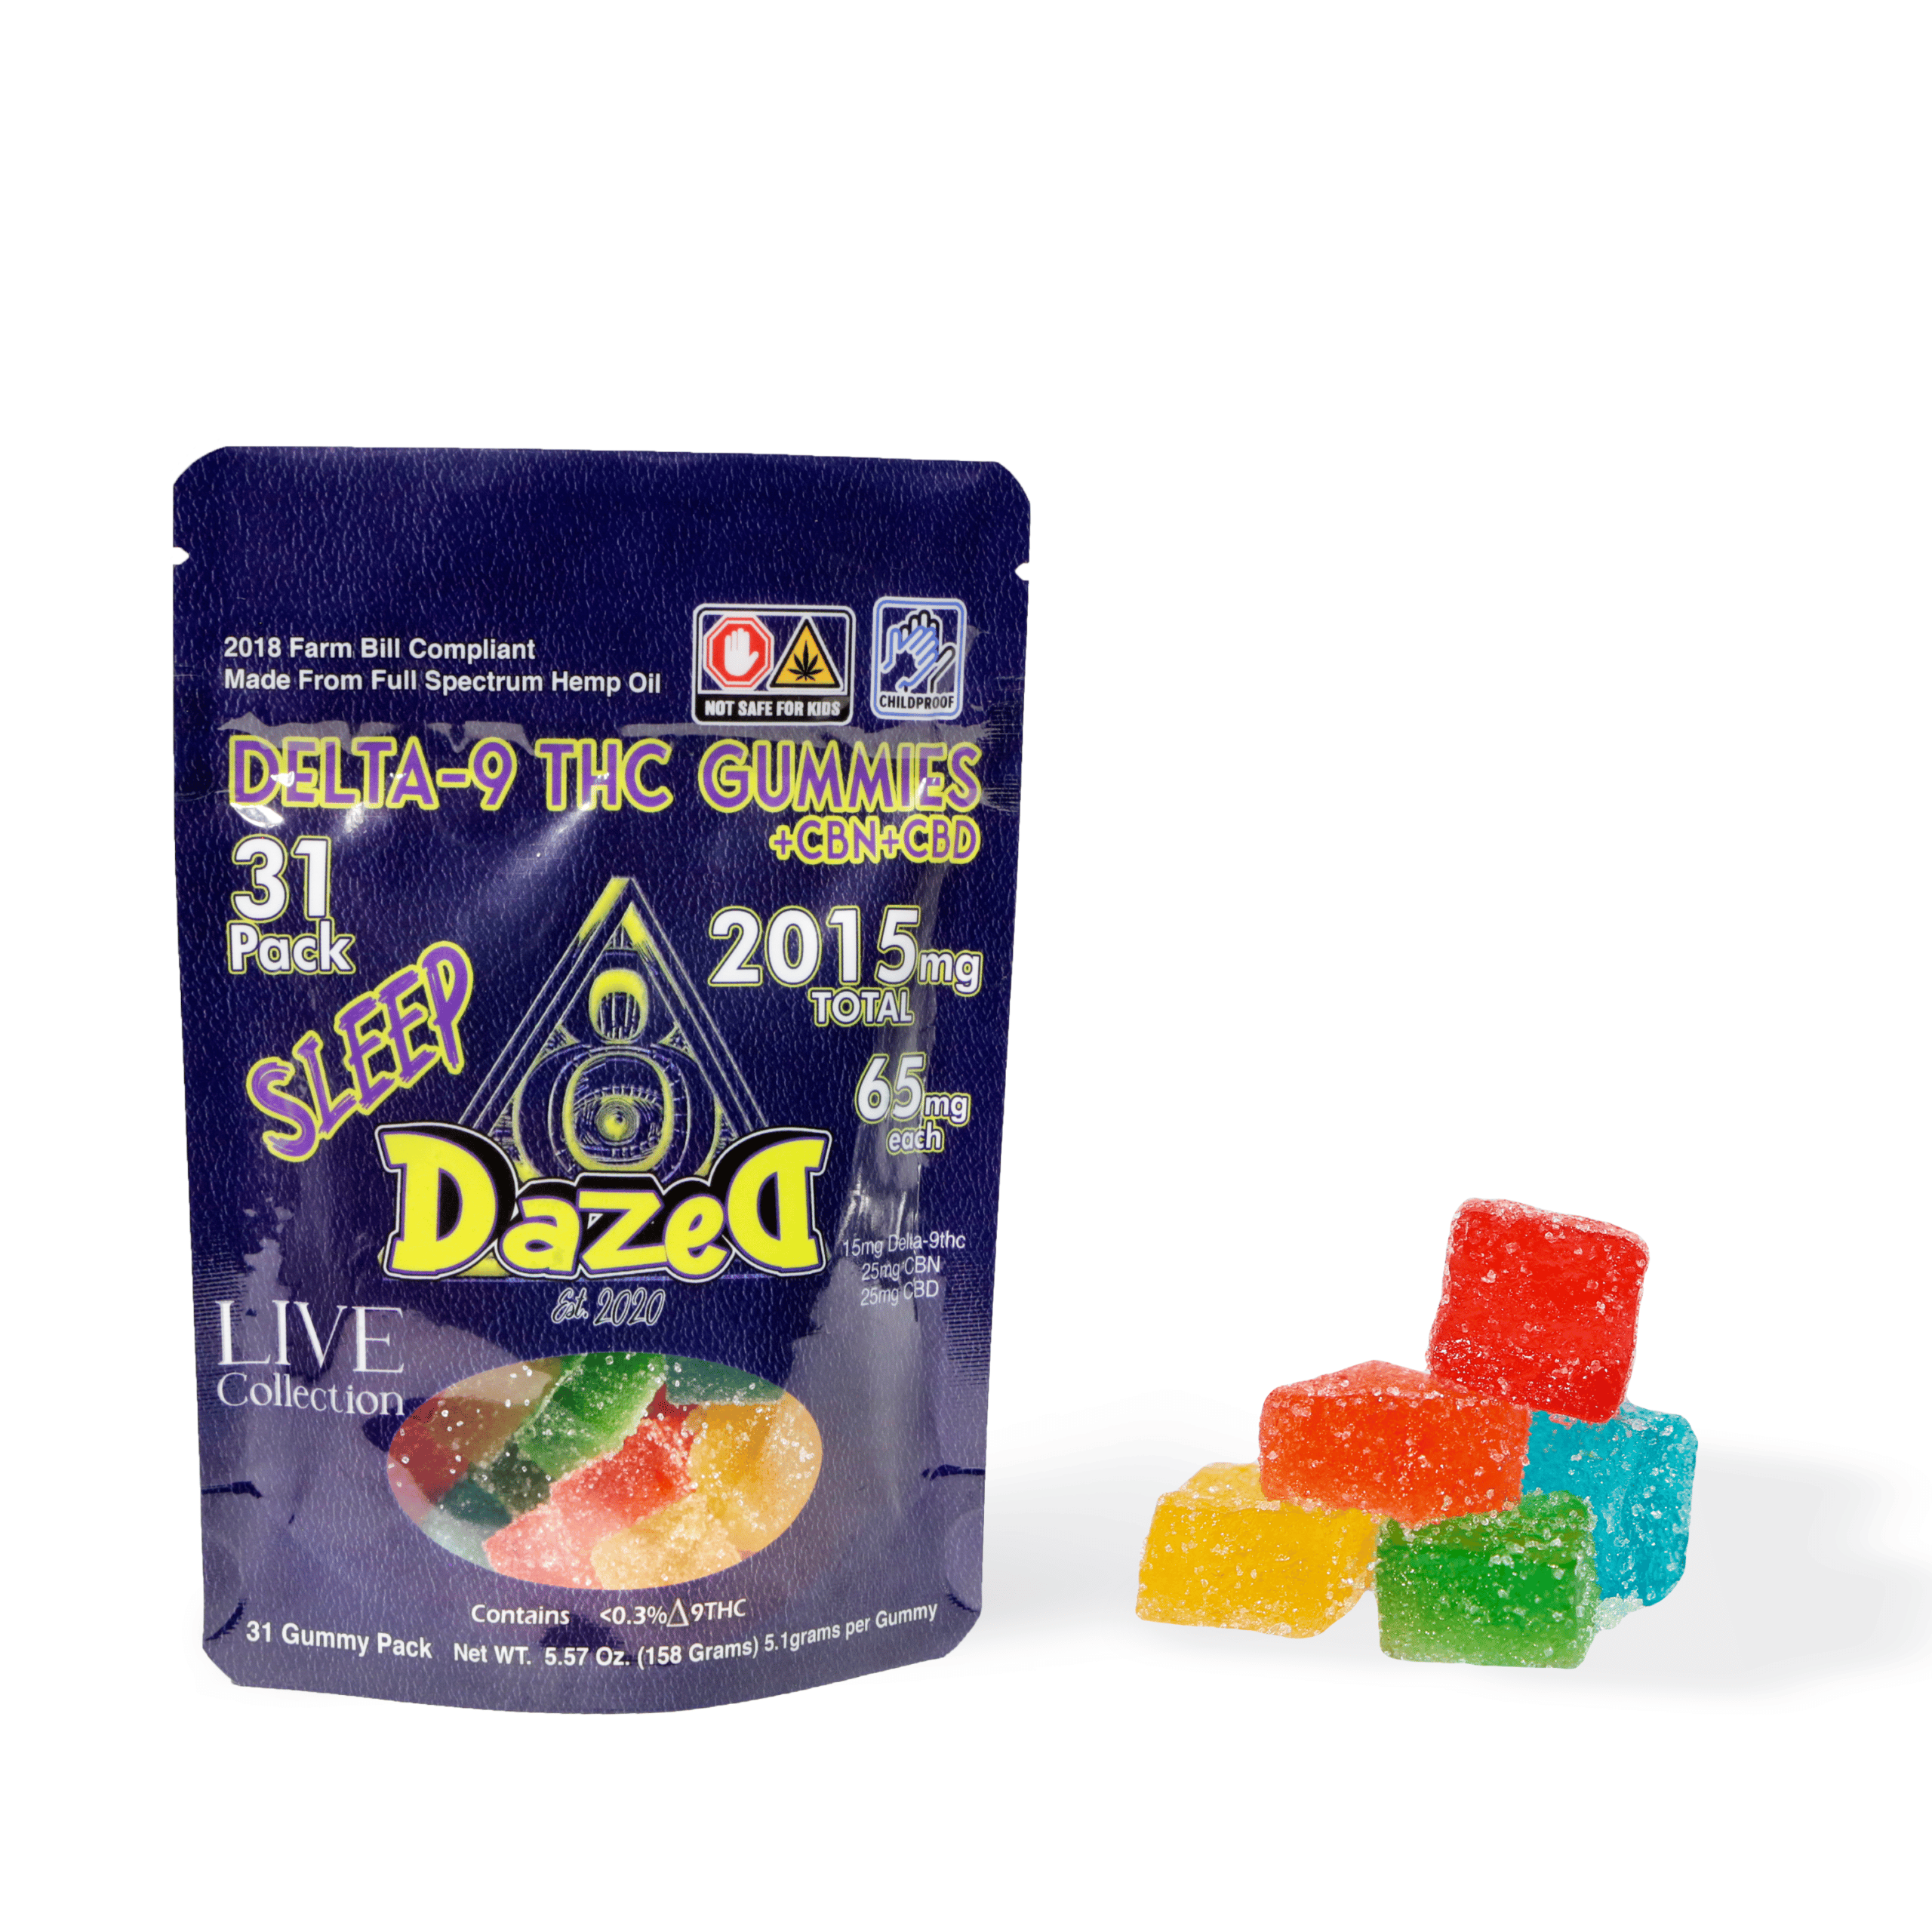 DazeD8 LIVE 65mg Delta-9 THC Gummies (31pc) Best Price